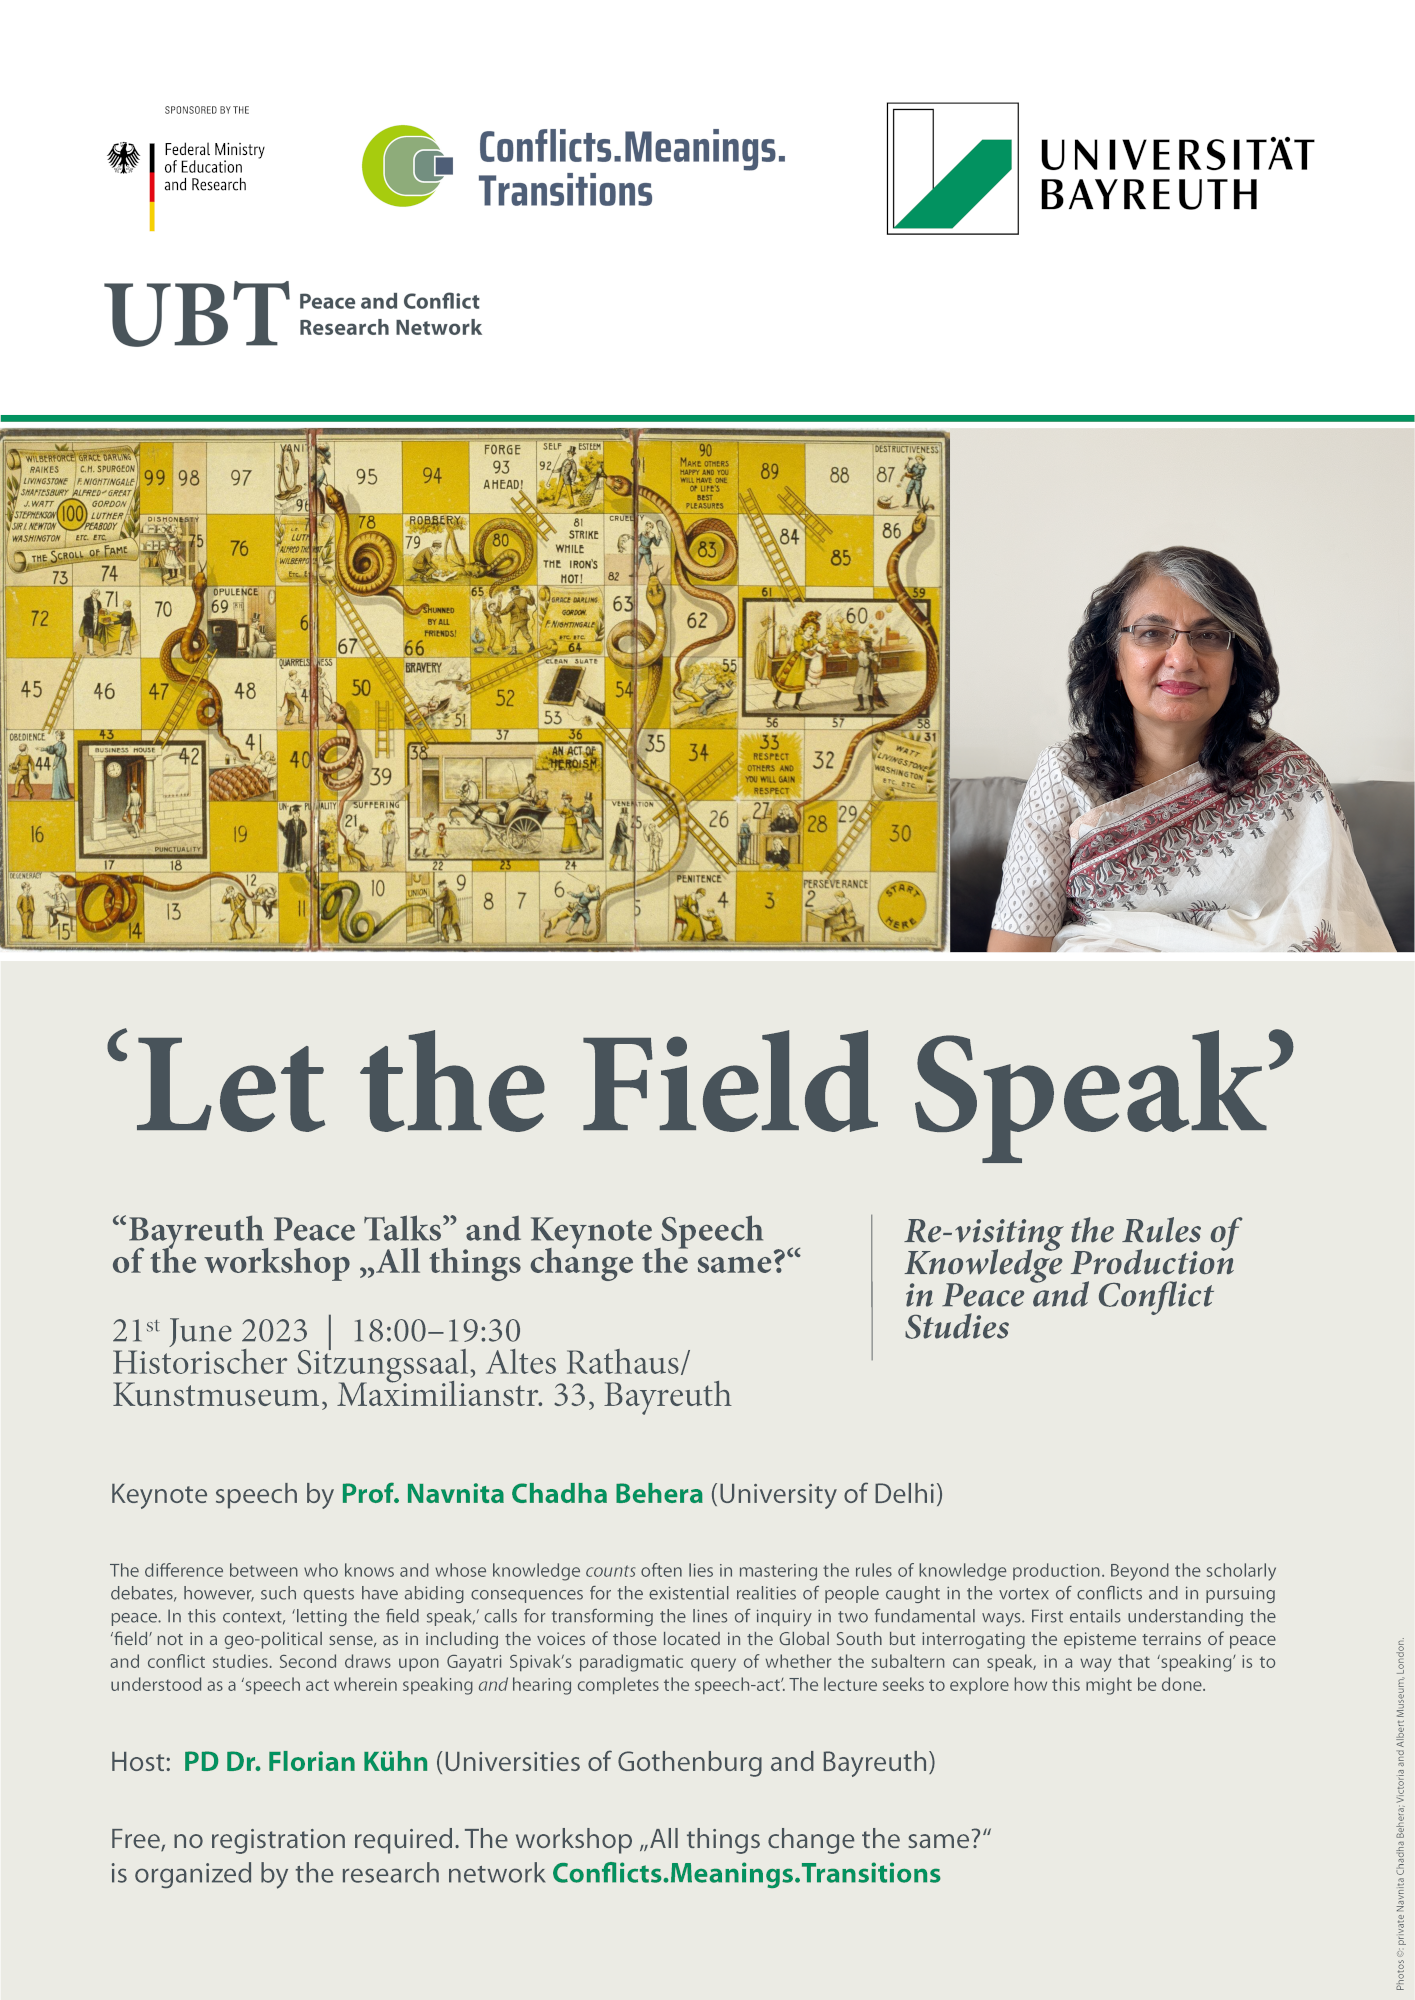 Poster for keynote speech by Navnita Chadha Behera